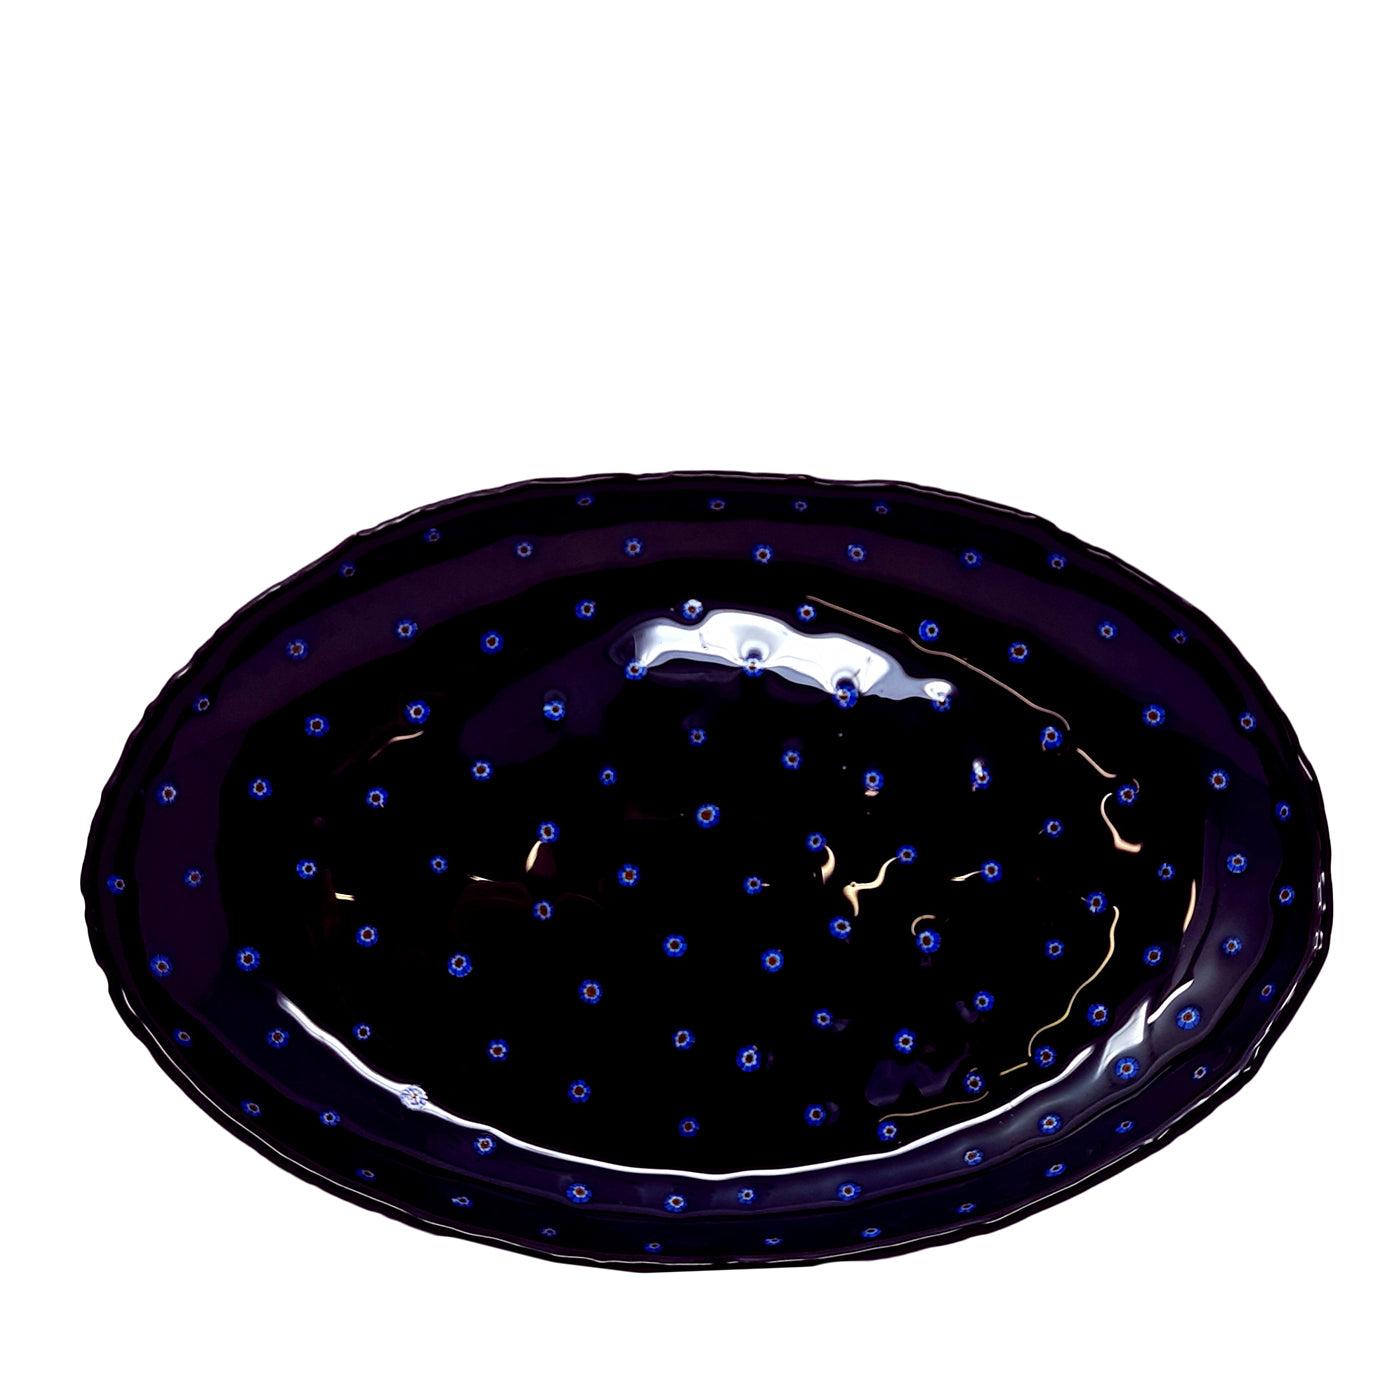 Bandeja de cristal negro con incrustaciones florales murrini - Vista principal